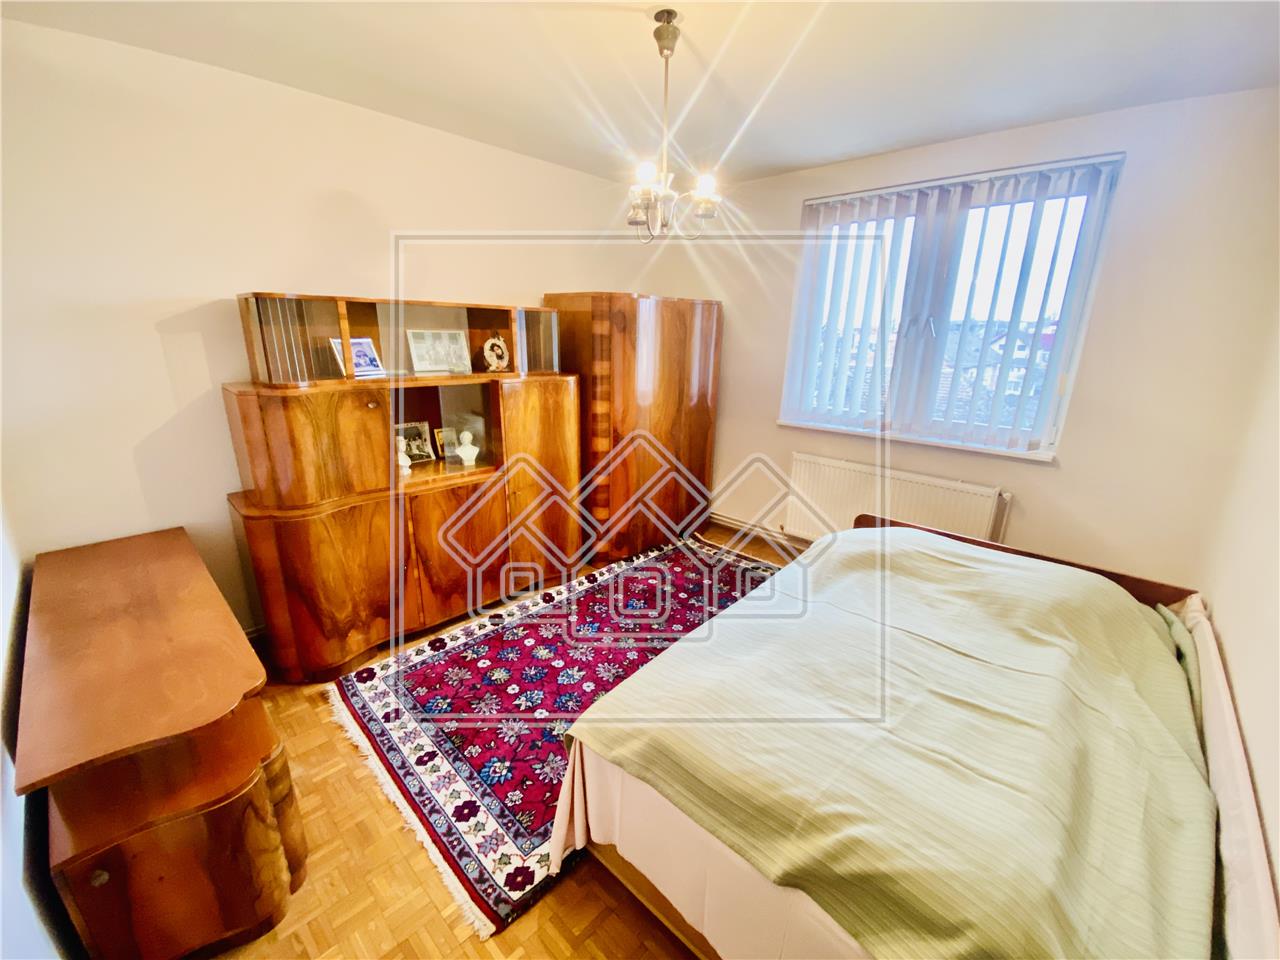 Wohnung zum Verkauf in Sibiu - 3 Zimmer und 2 Balkone - Lupeni-Gebiet